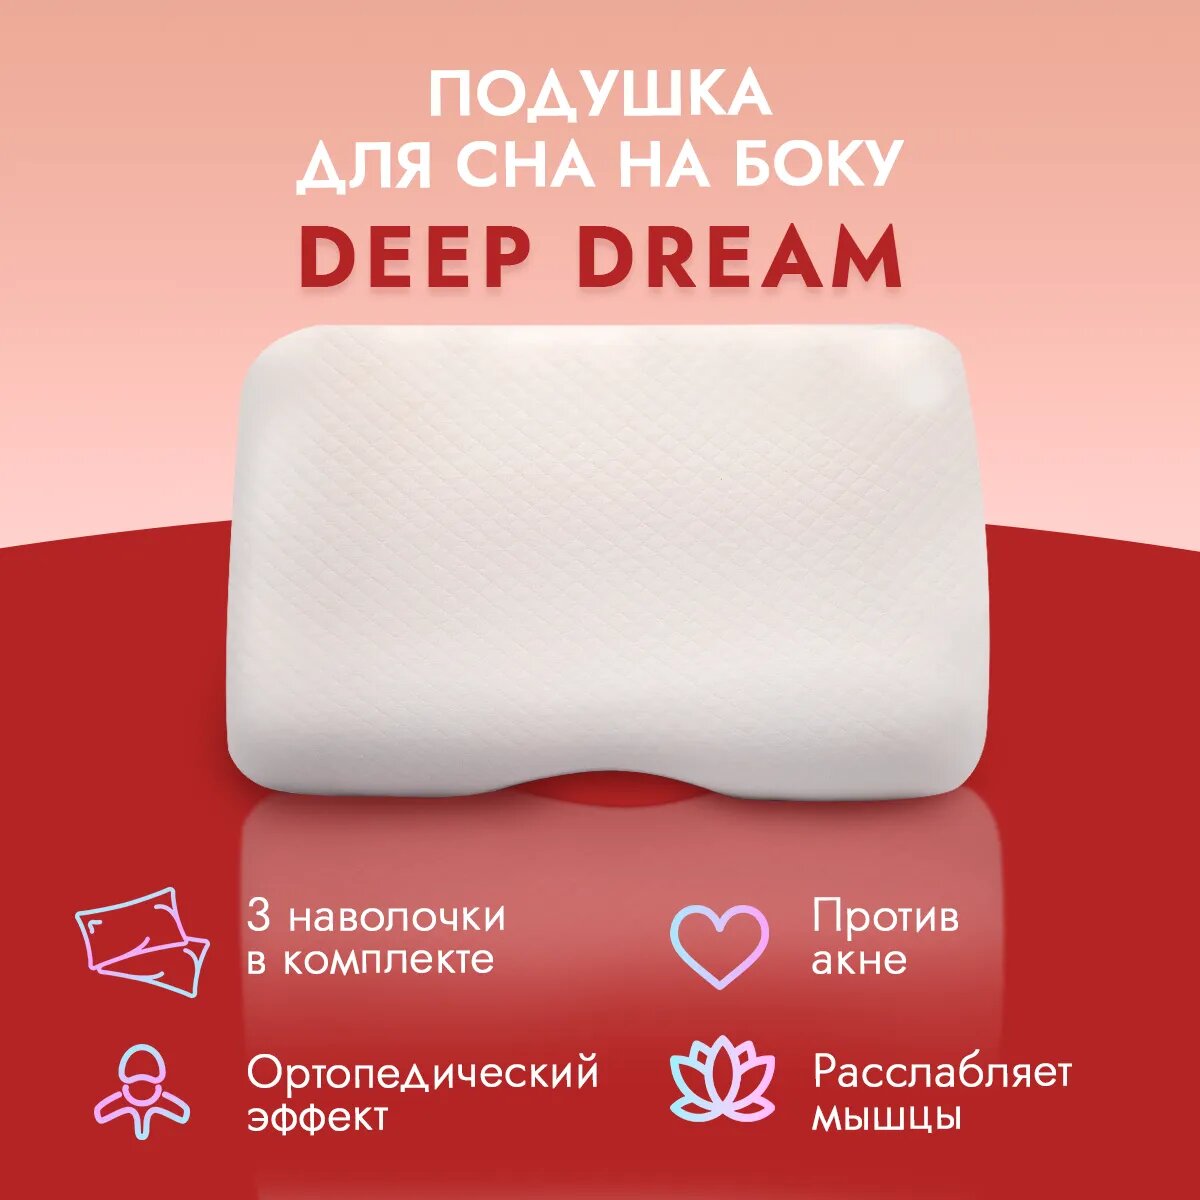 Анатомическая подушка LoliDream под плечо Deep Dream, белая Hoff - фото №1